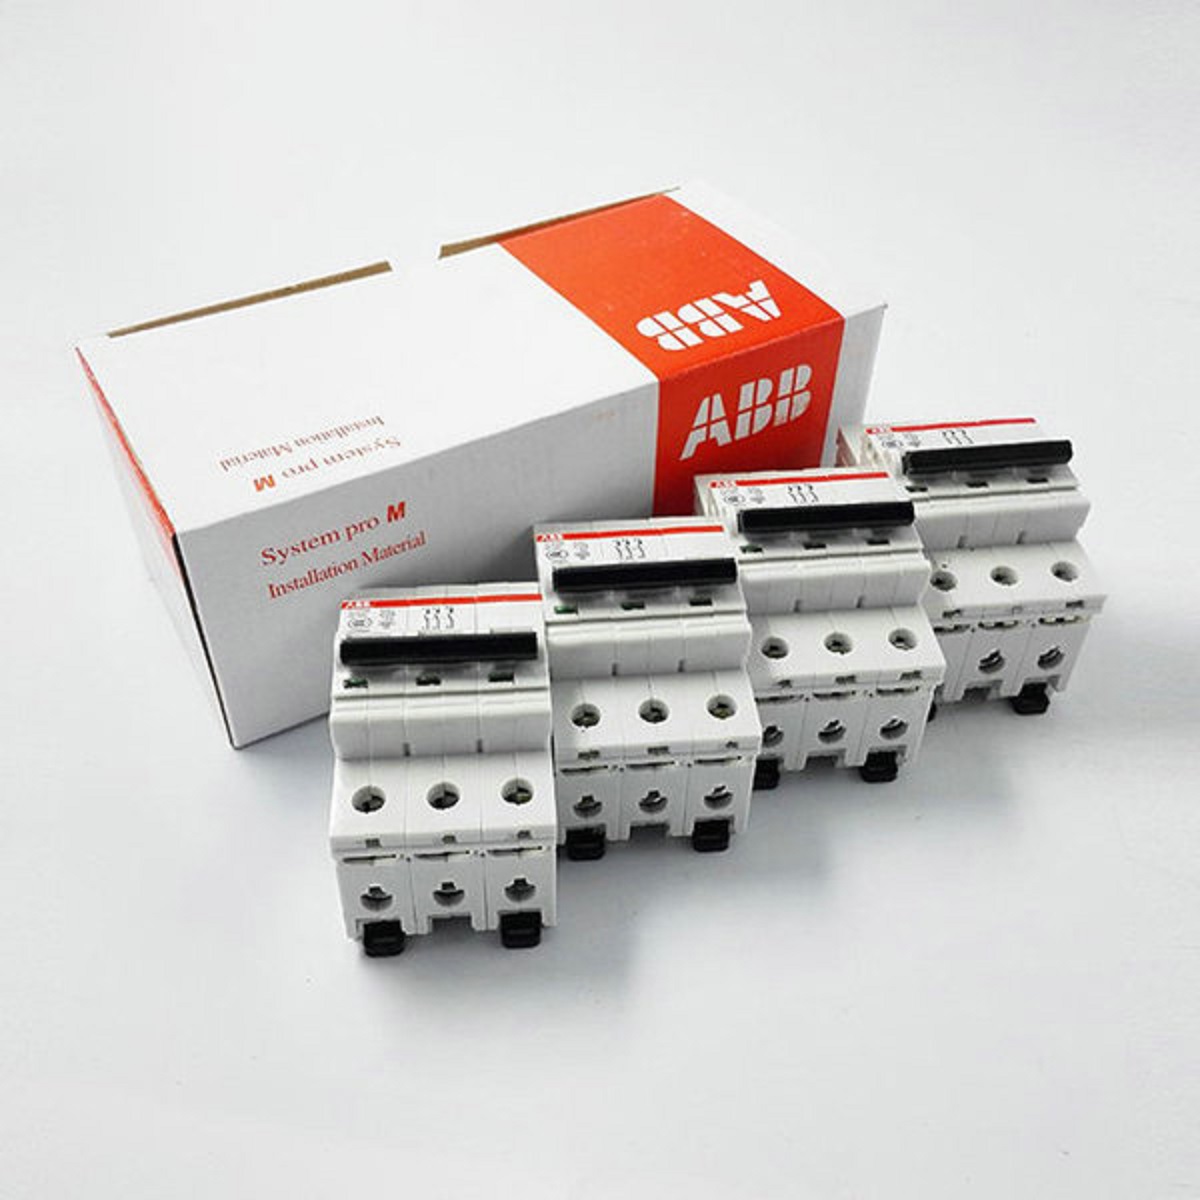 ABB微型断路器	SH201-C8NA 10103976
	SH201-C10NA 10103977 ABB,SH201,微型断路器,空气开关,abb断路器